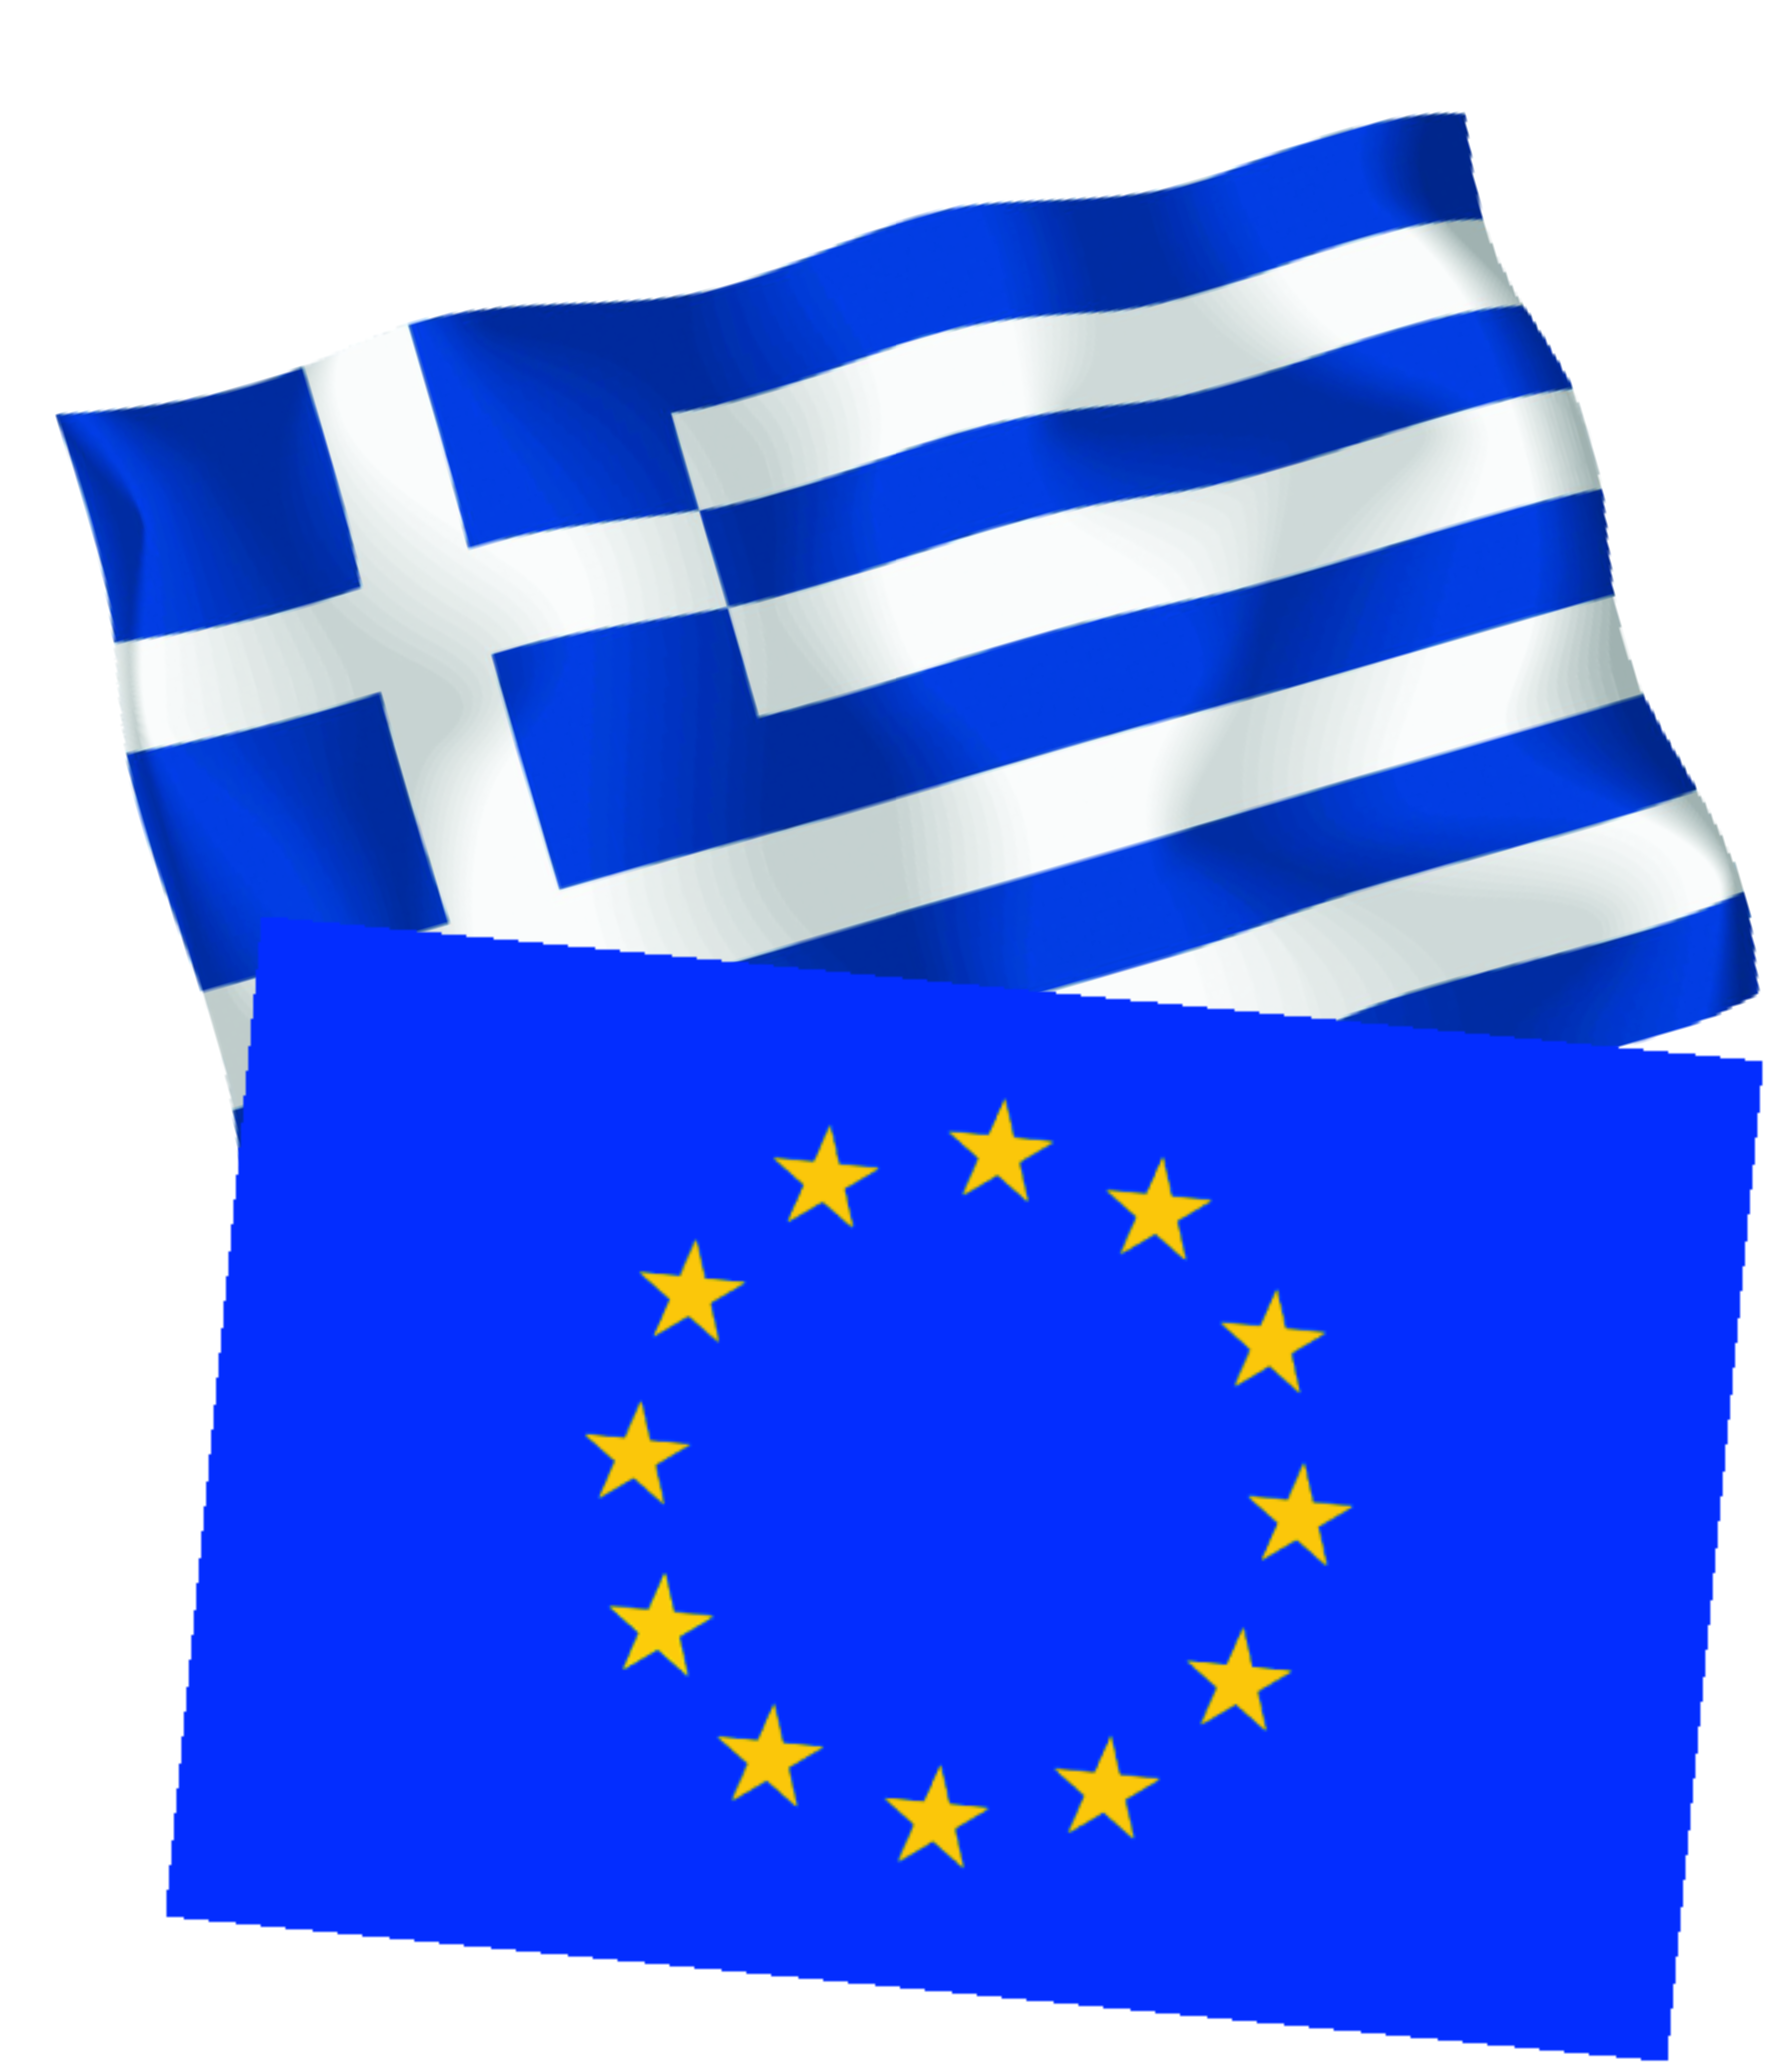 Σημαία Ελληνική
ΚΩΔ: 201002  100x150cm
ΚΩΔ: 201003  70x100cm
Σημαία Ευρωπαϊκή
ΚΩΔ: 201004  100x150cm